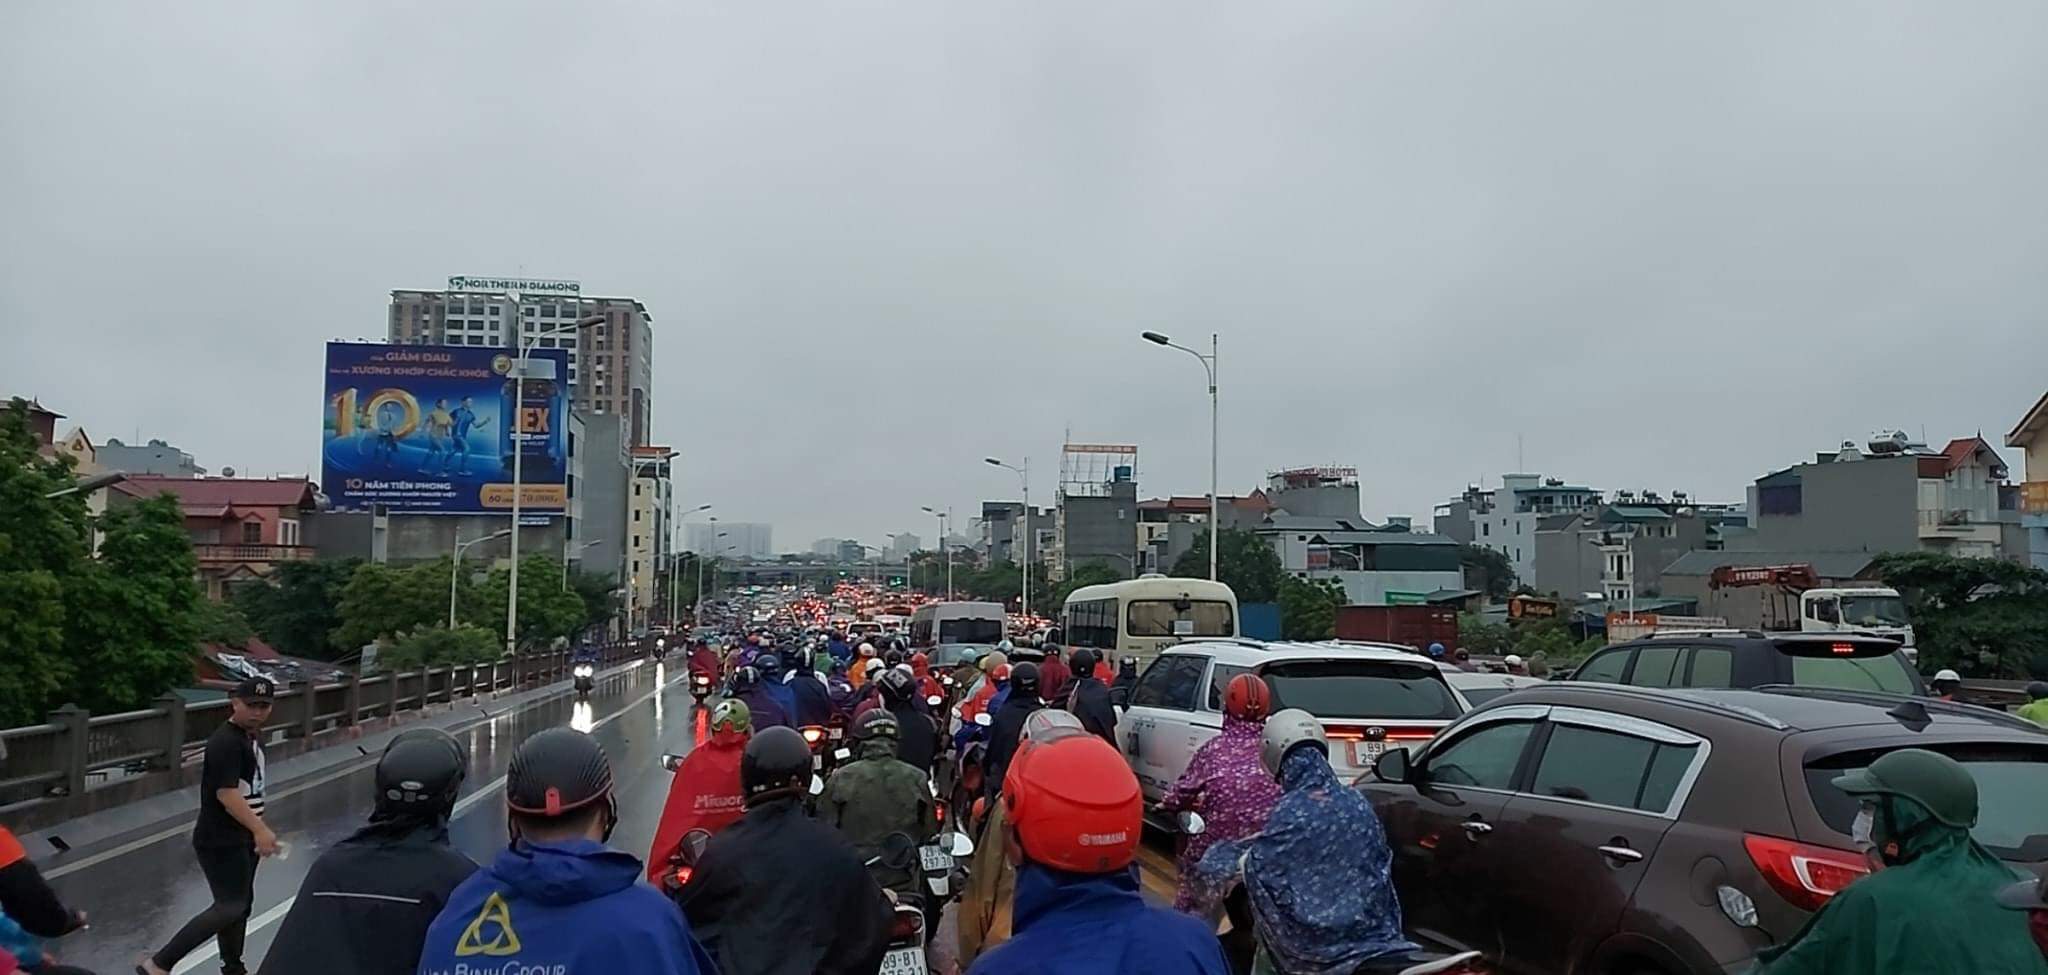 Hà Nội ùn tắc kinh hoàng, người dân chôn chân dưới trời mưa - 22